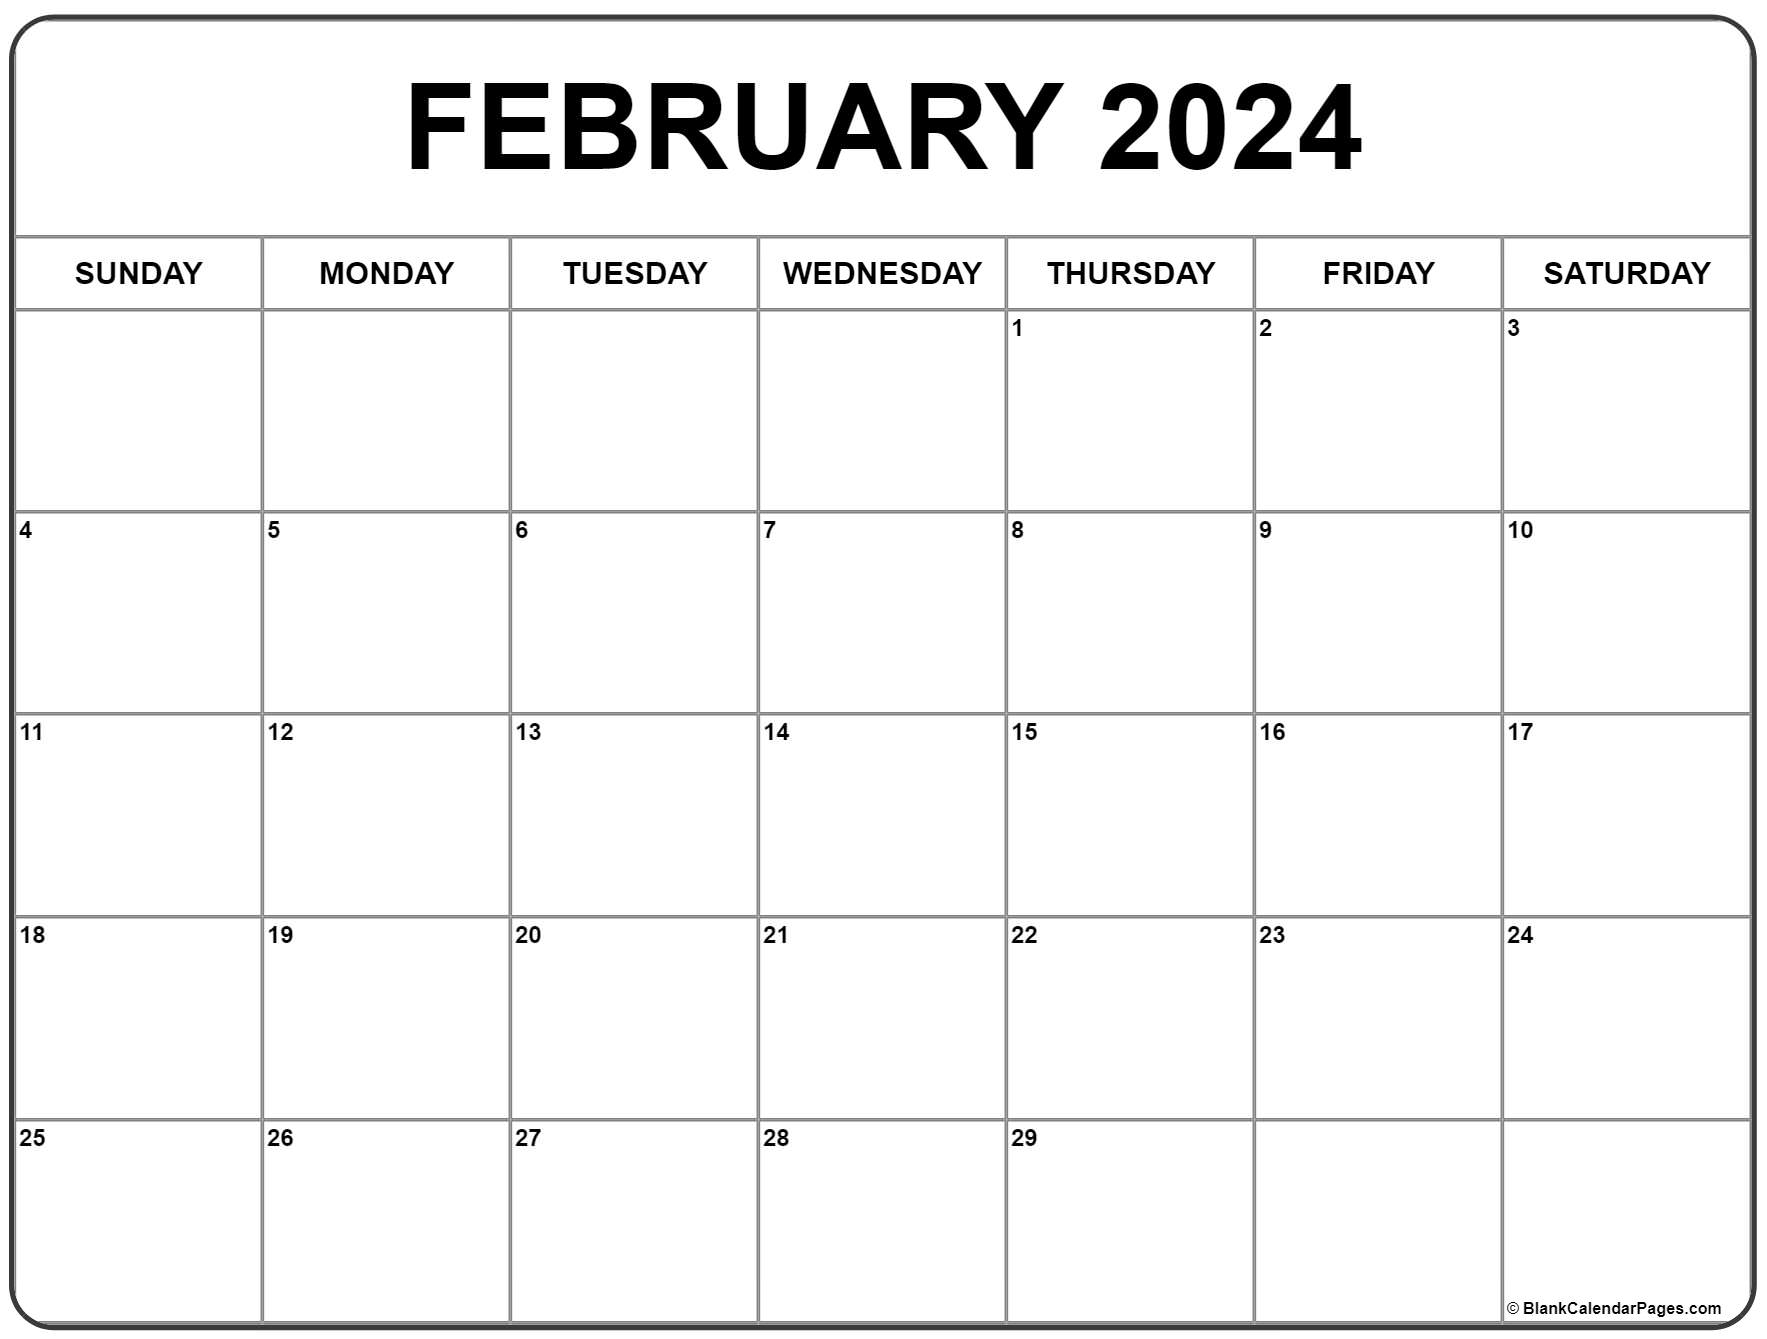 February 2024 Calendar | Free Printable Calendar for Feburary 2024 Printable Calendar